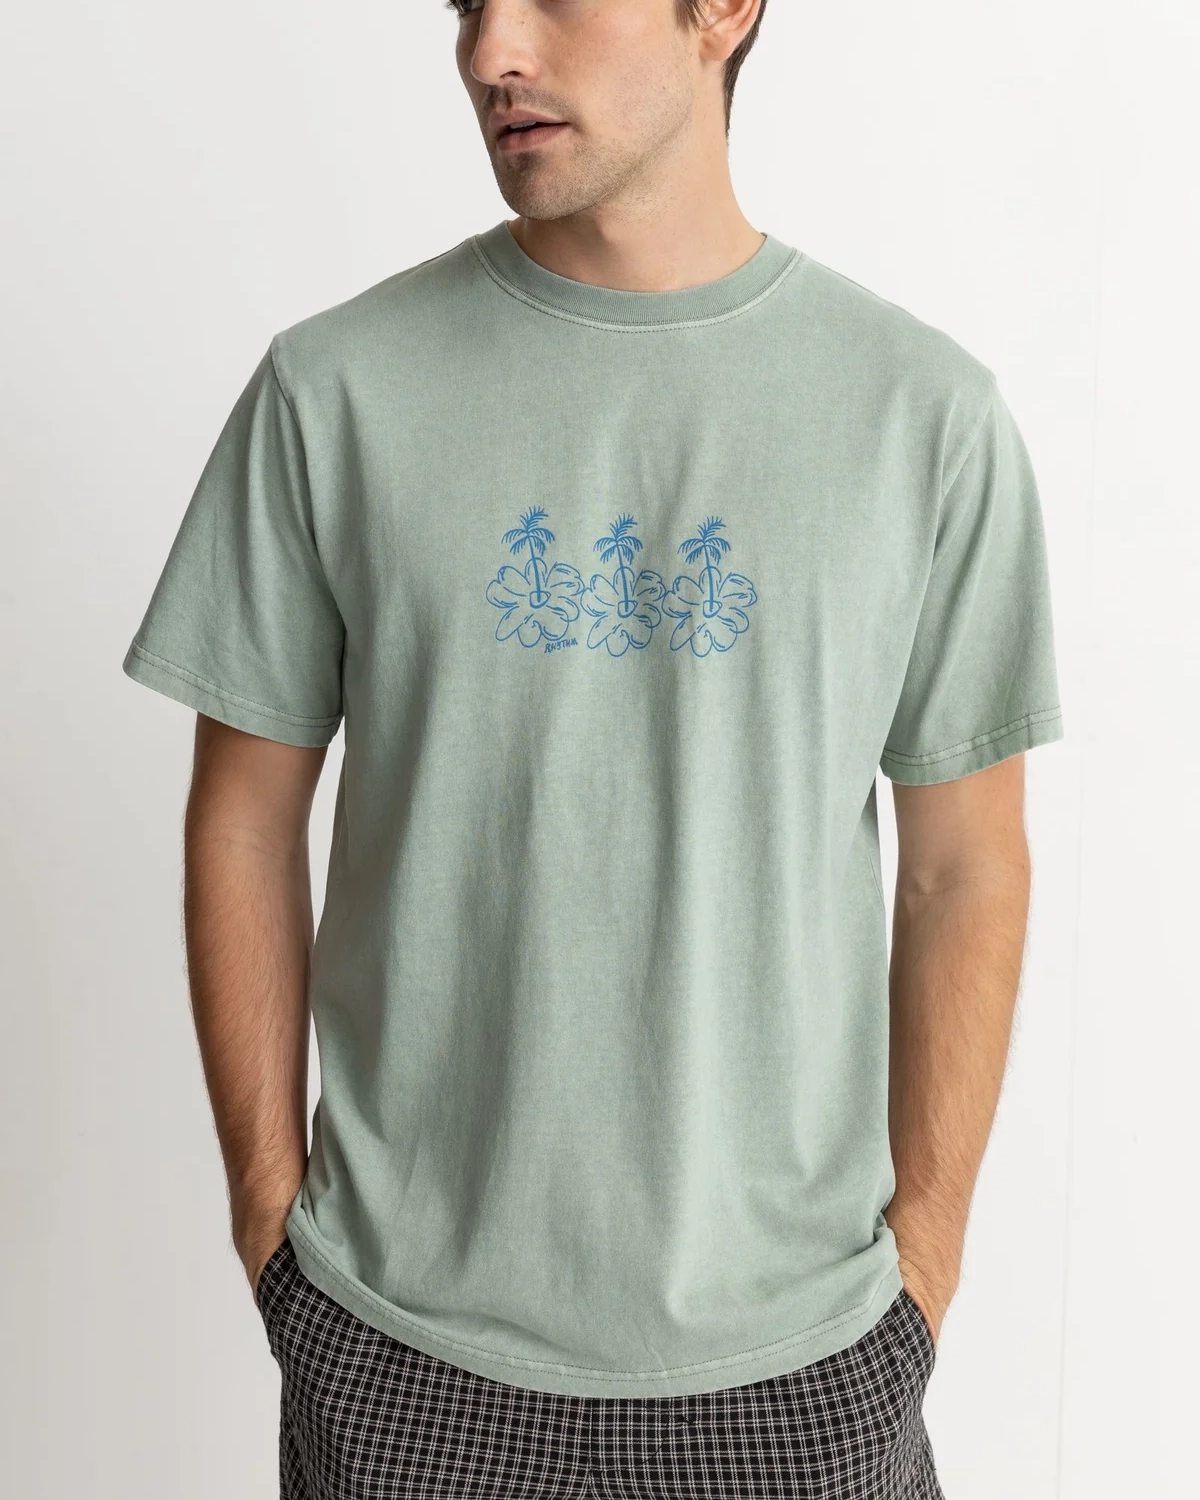 T-shirt La Palma Vintage - Seafoam